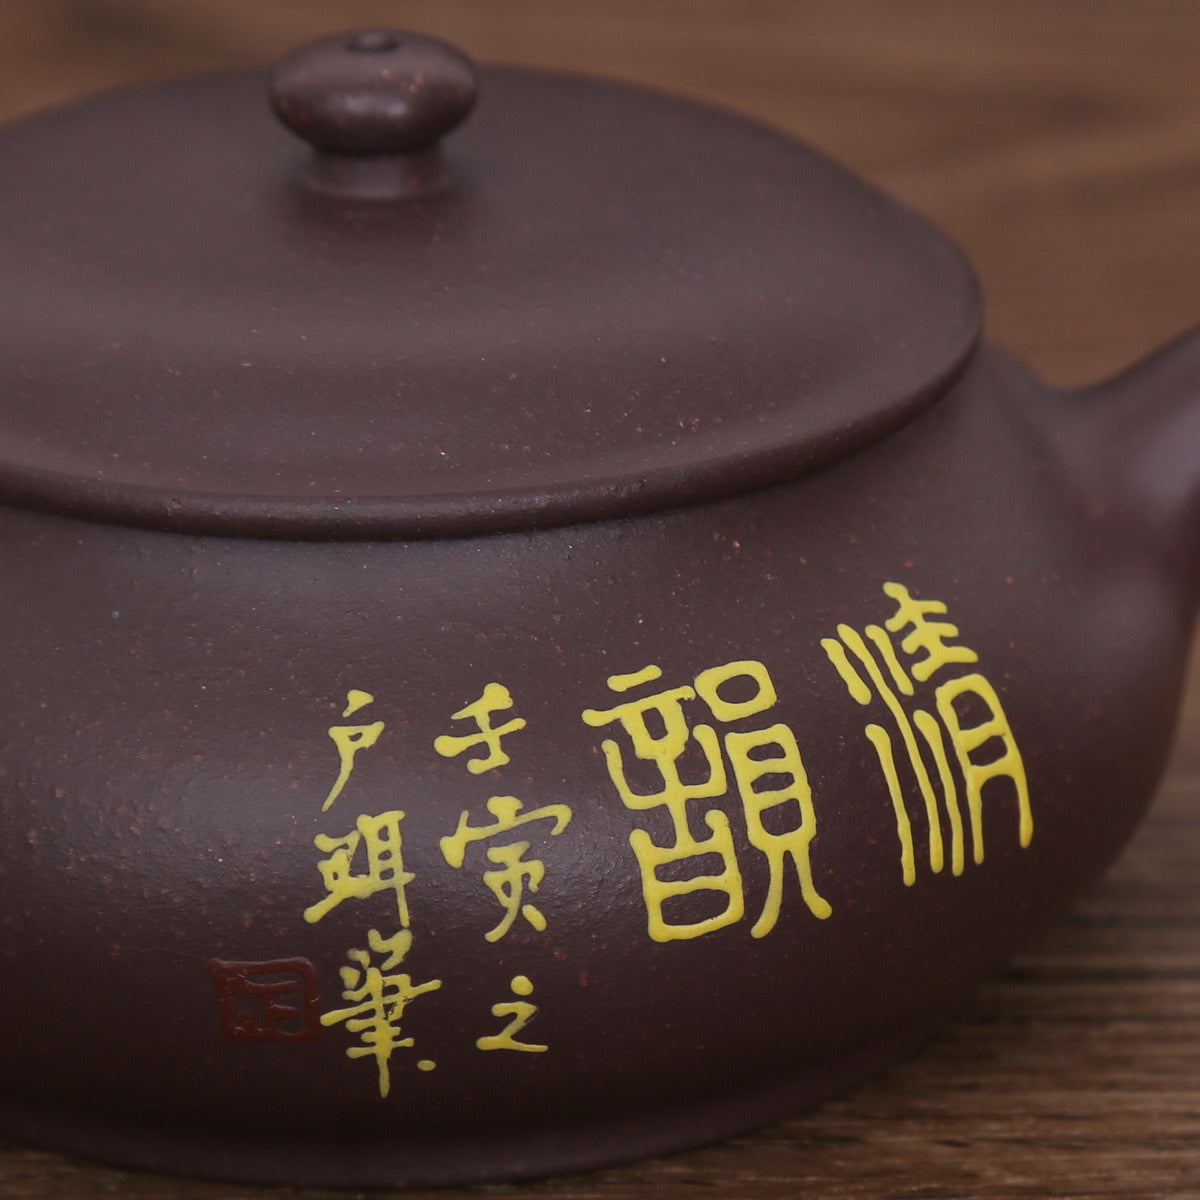 Single Teapot, Yixing Ware (Xiao Xi Shi, 150ml)